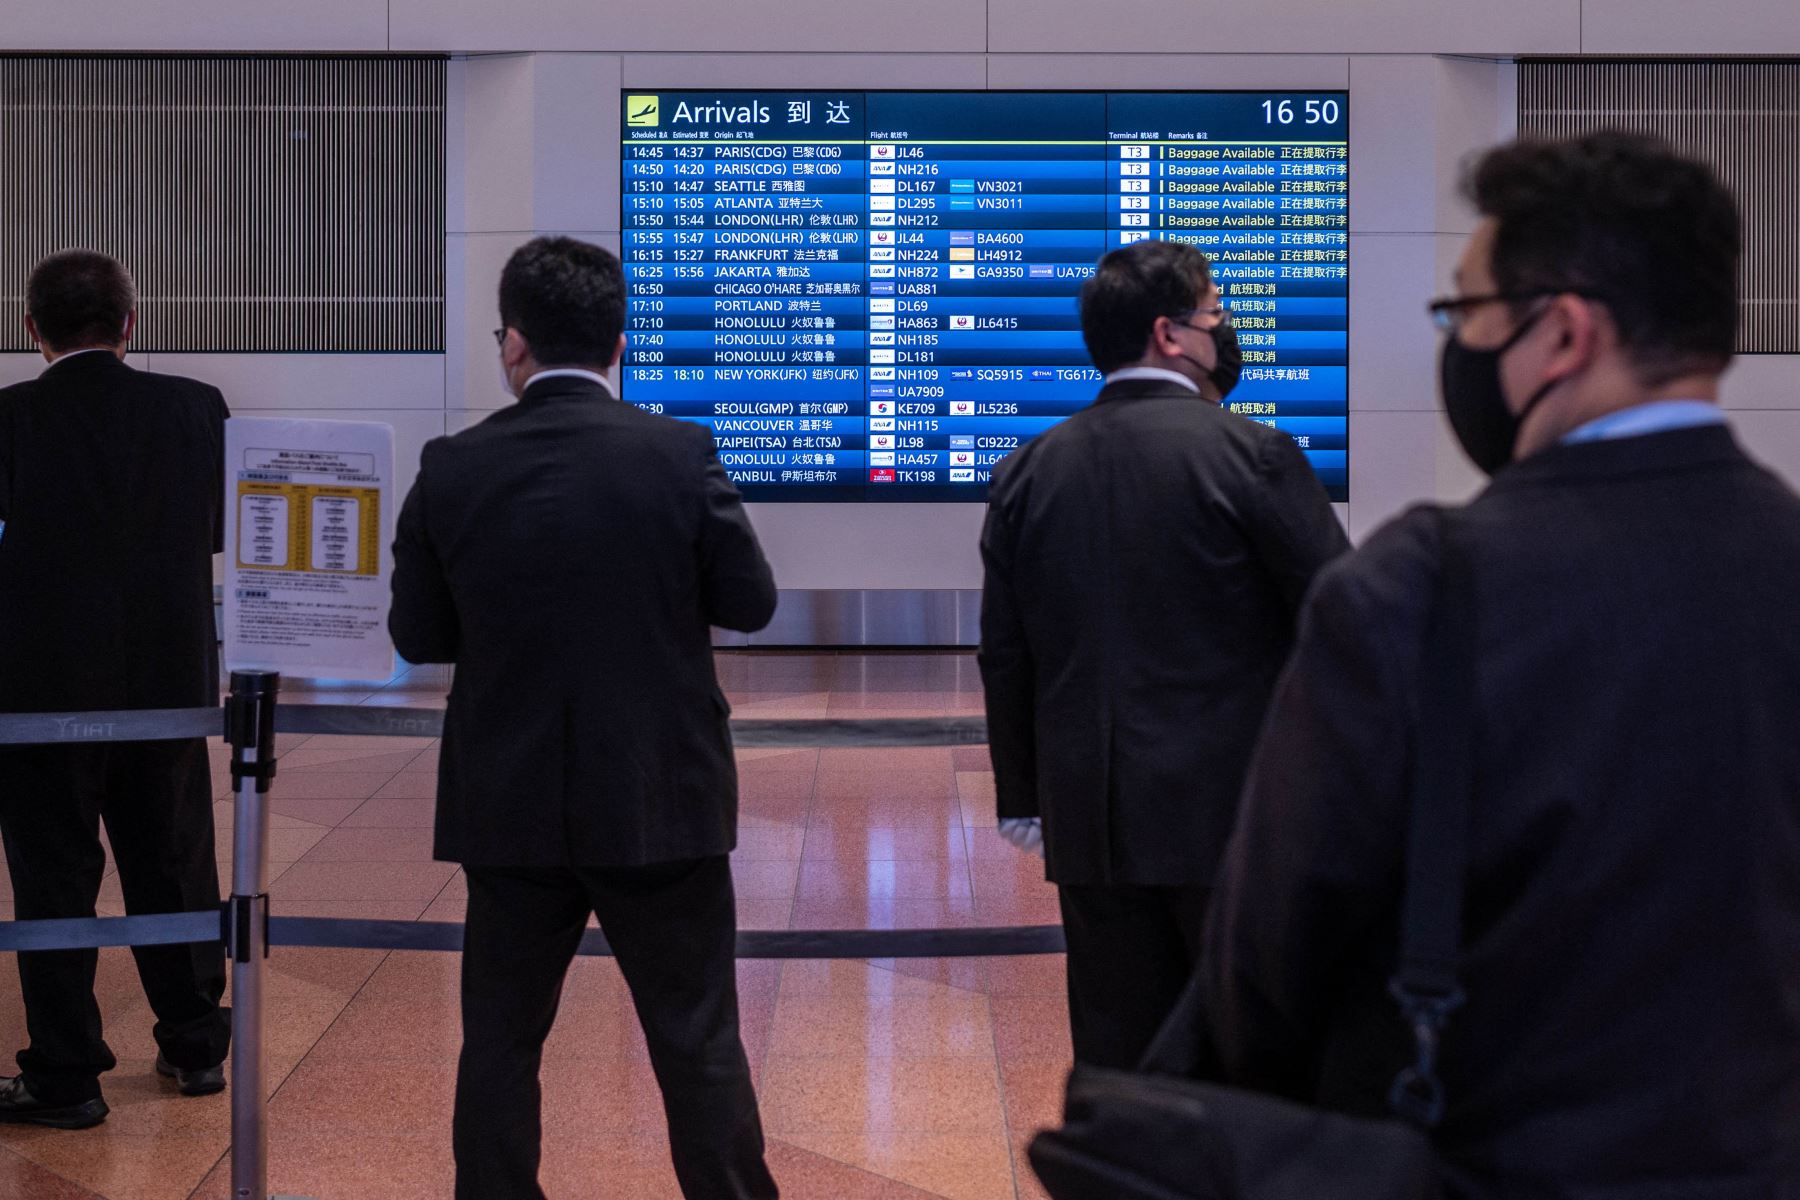 La gente se reúne en la sala de llegadas del aeropuerto internacional Haneda, cuando Japón anunció planes para prohibir a todos los nuevos viajeros extranjeros sobre la variante Omicron de Covid-19. Foto: AFP